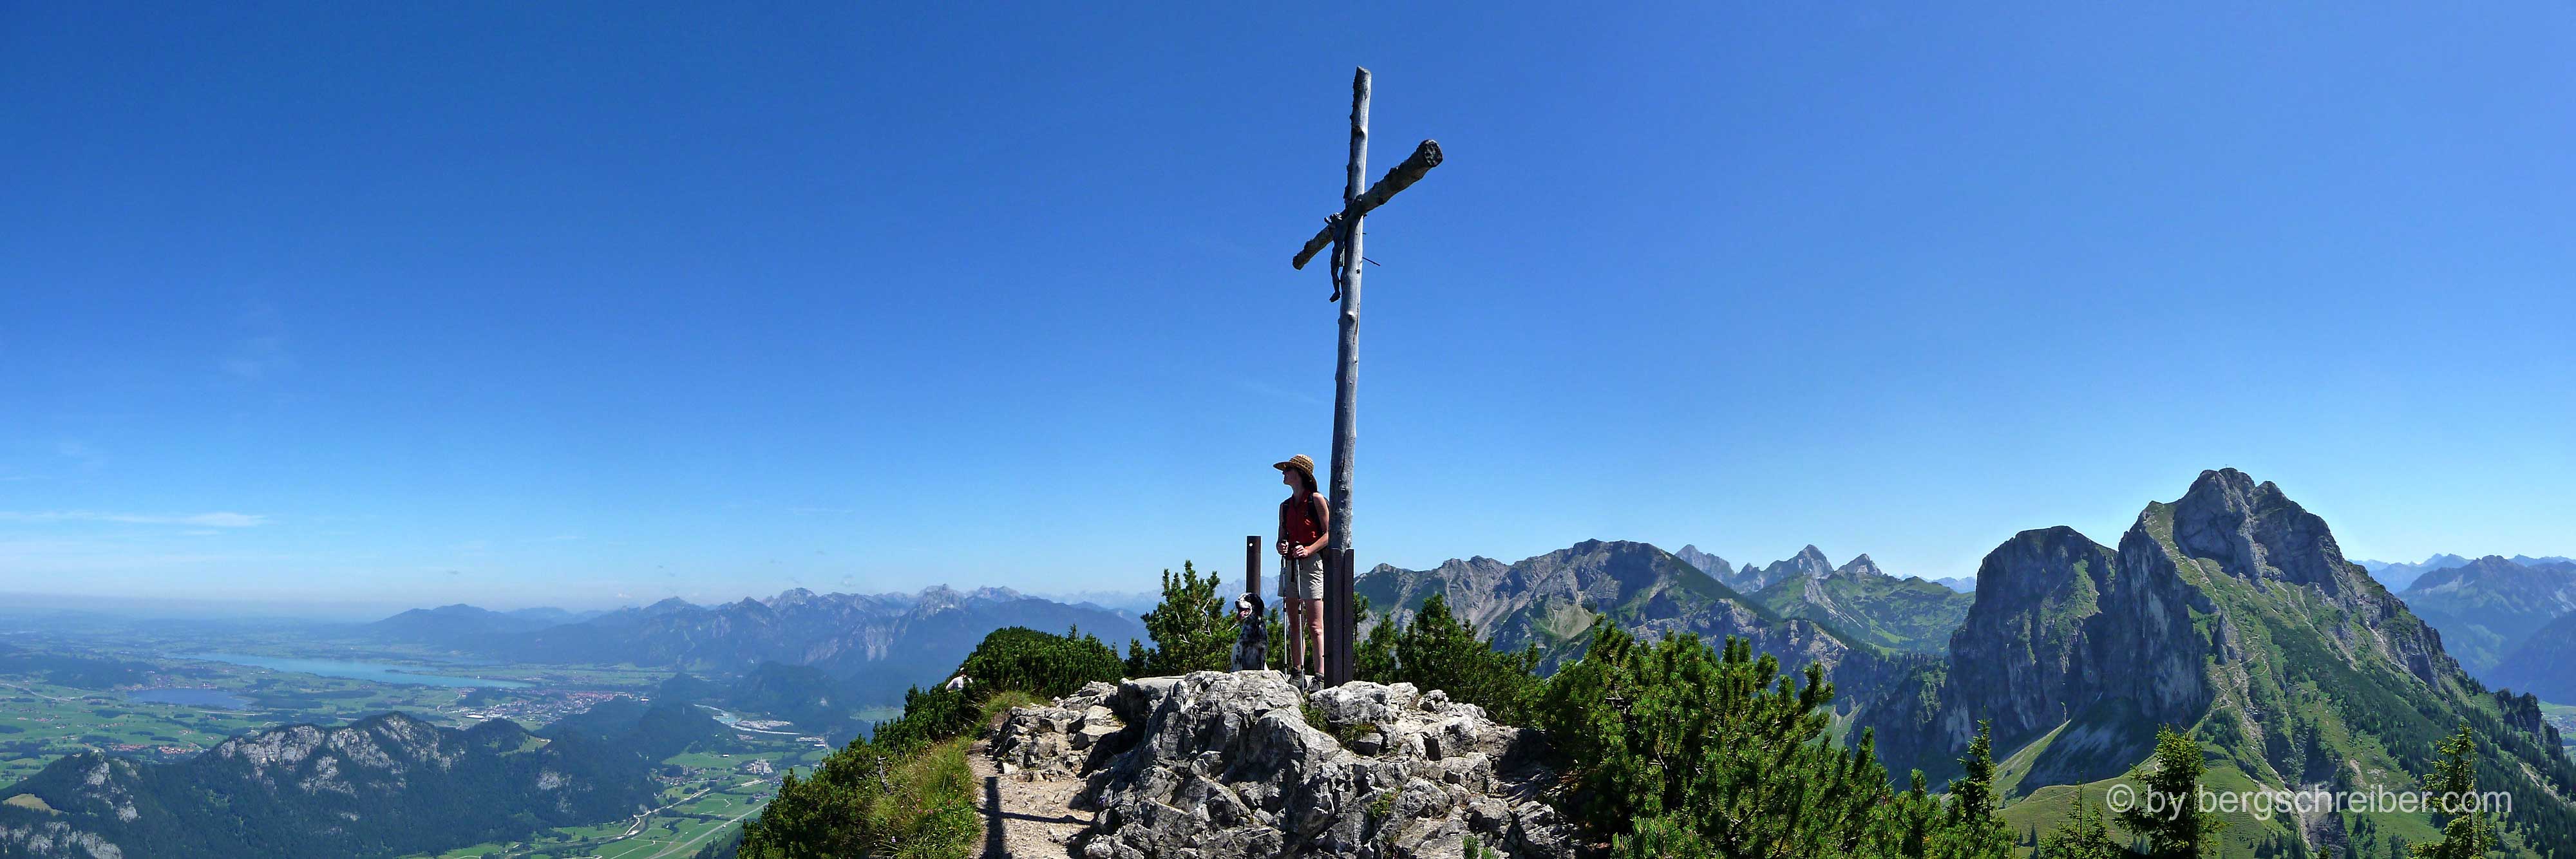 Das Gipfelkreuz auf dem Breitenberg in den Allgäuer Alpen